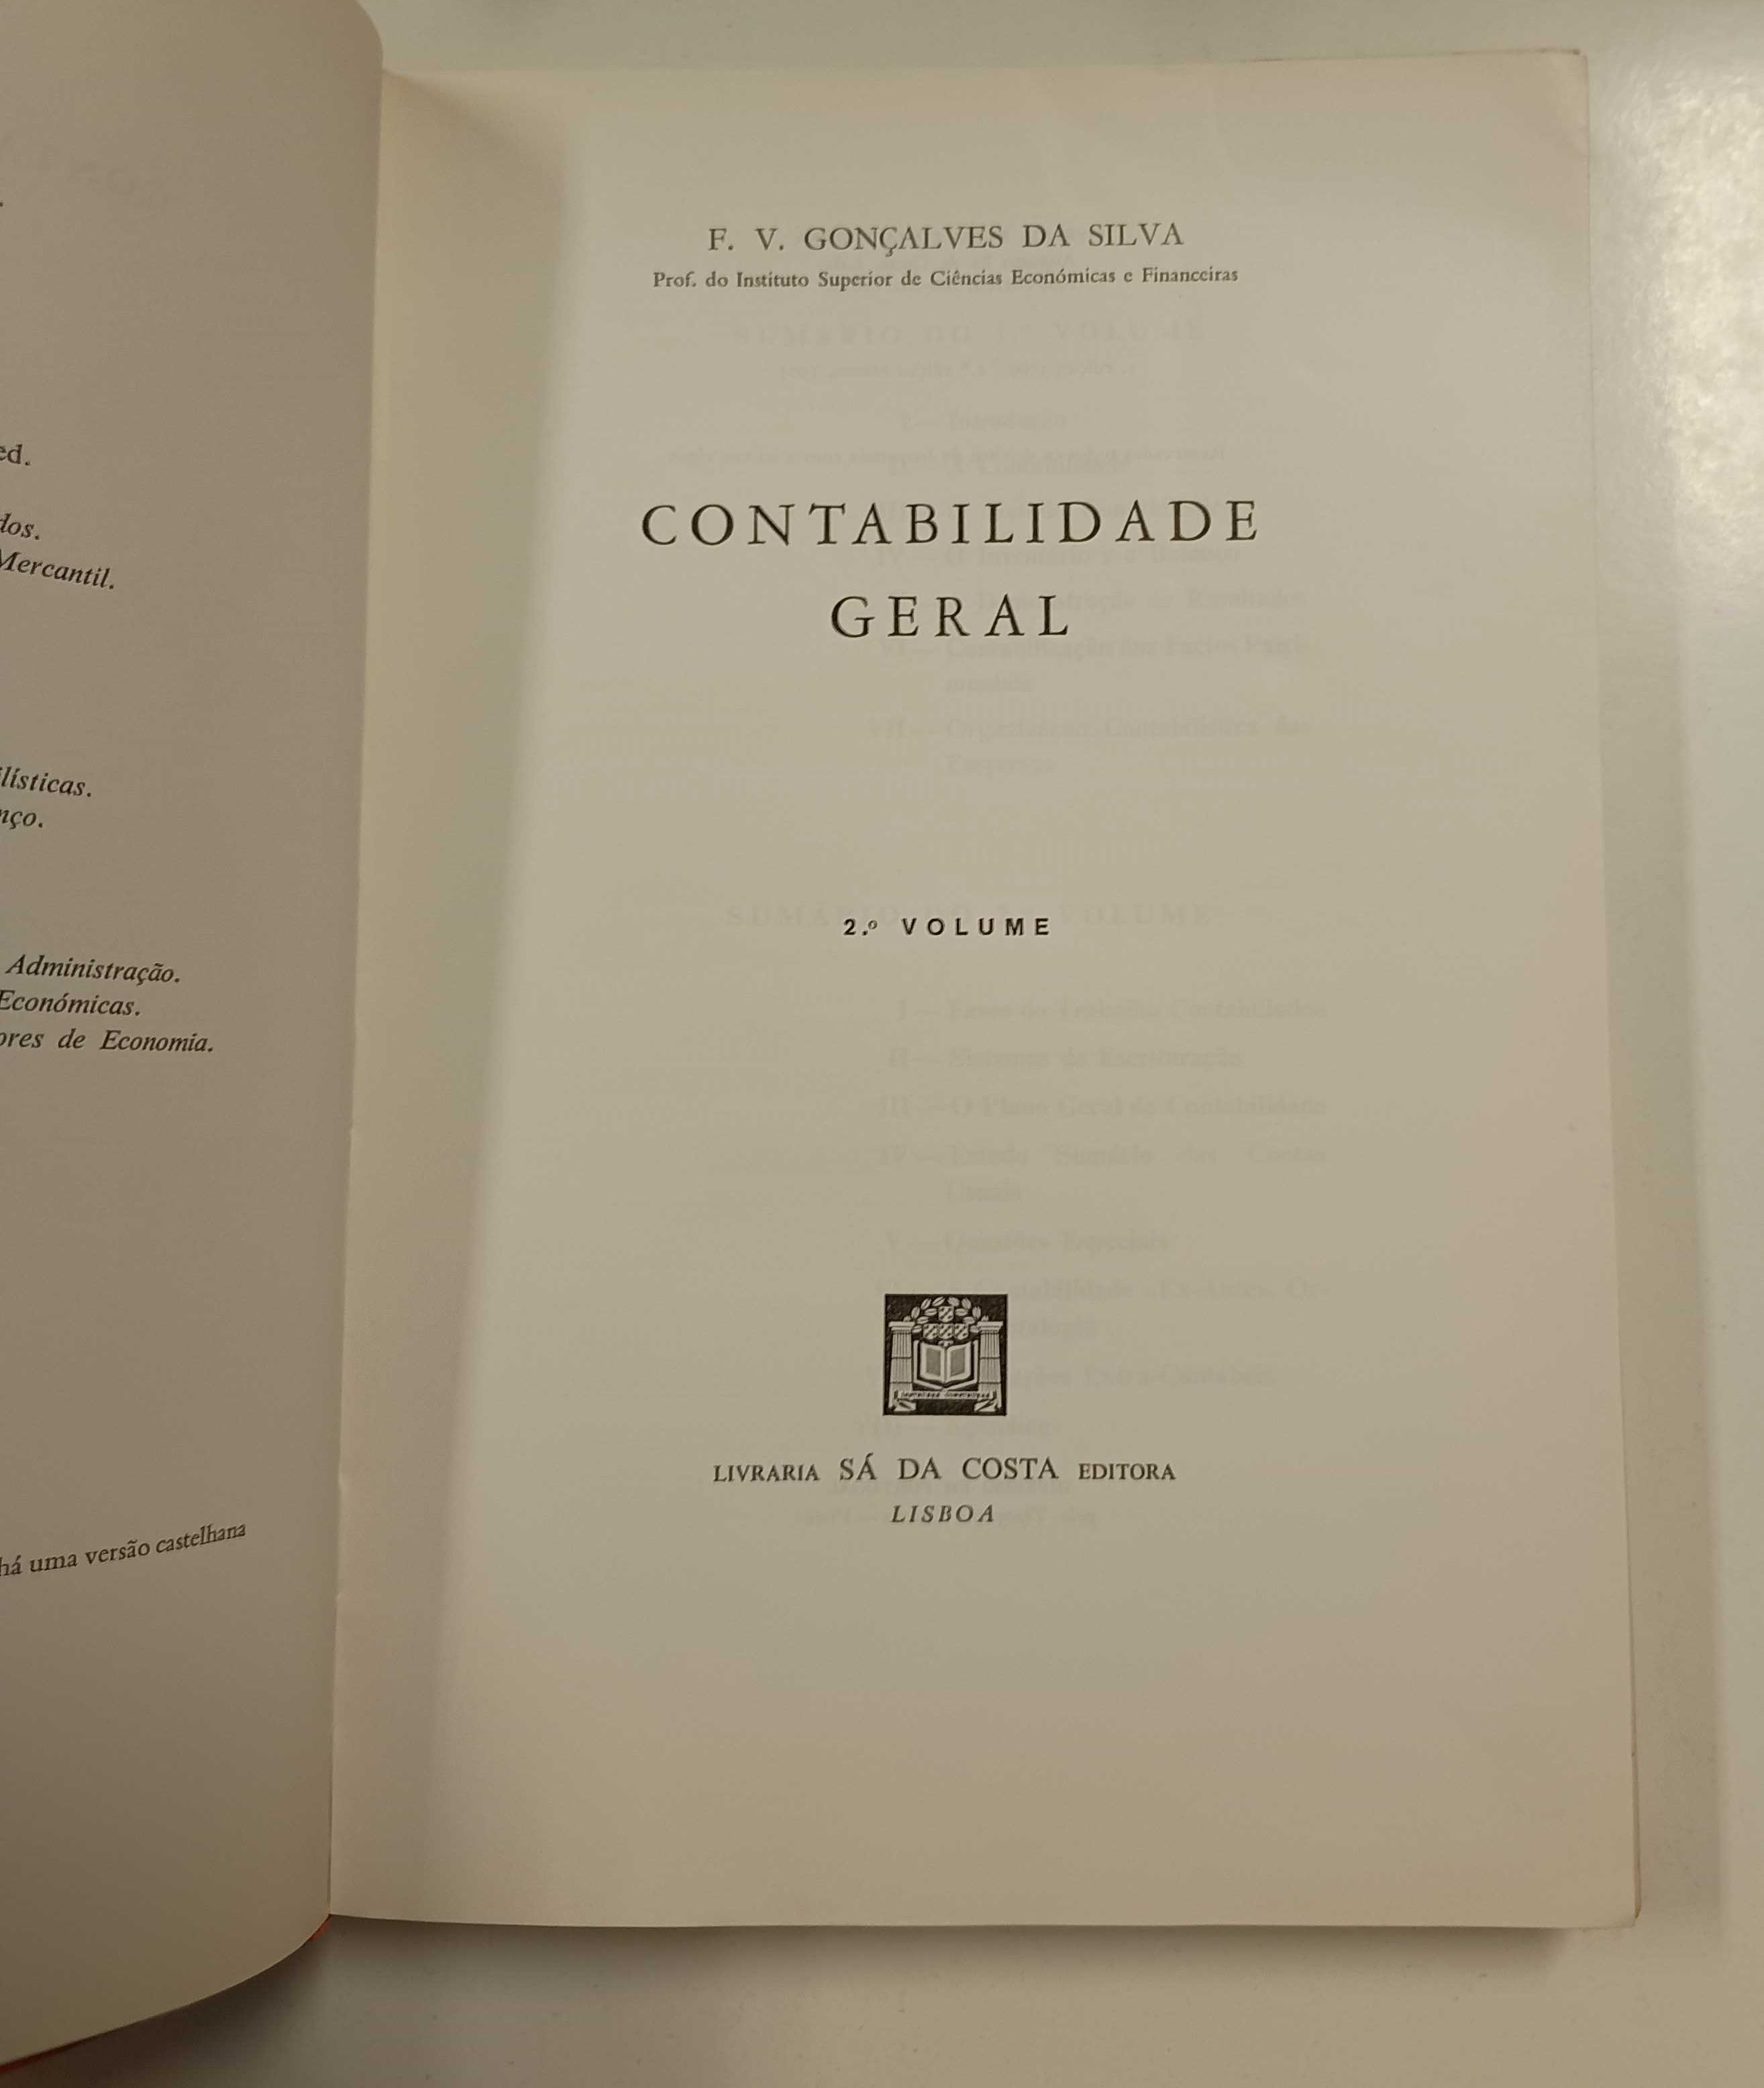 Contabilidade Geral, de F. V. Gonçalves da Silva